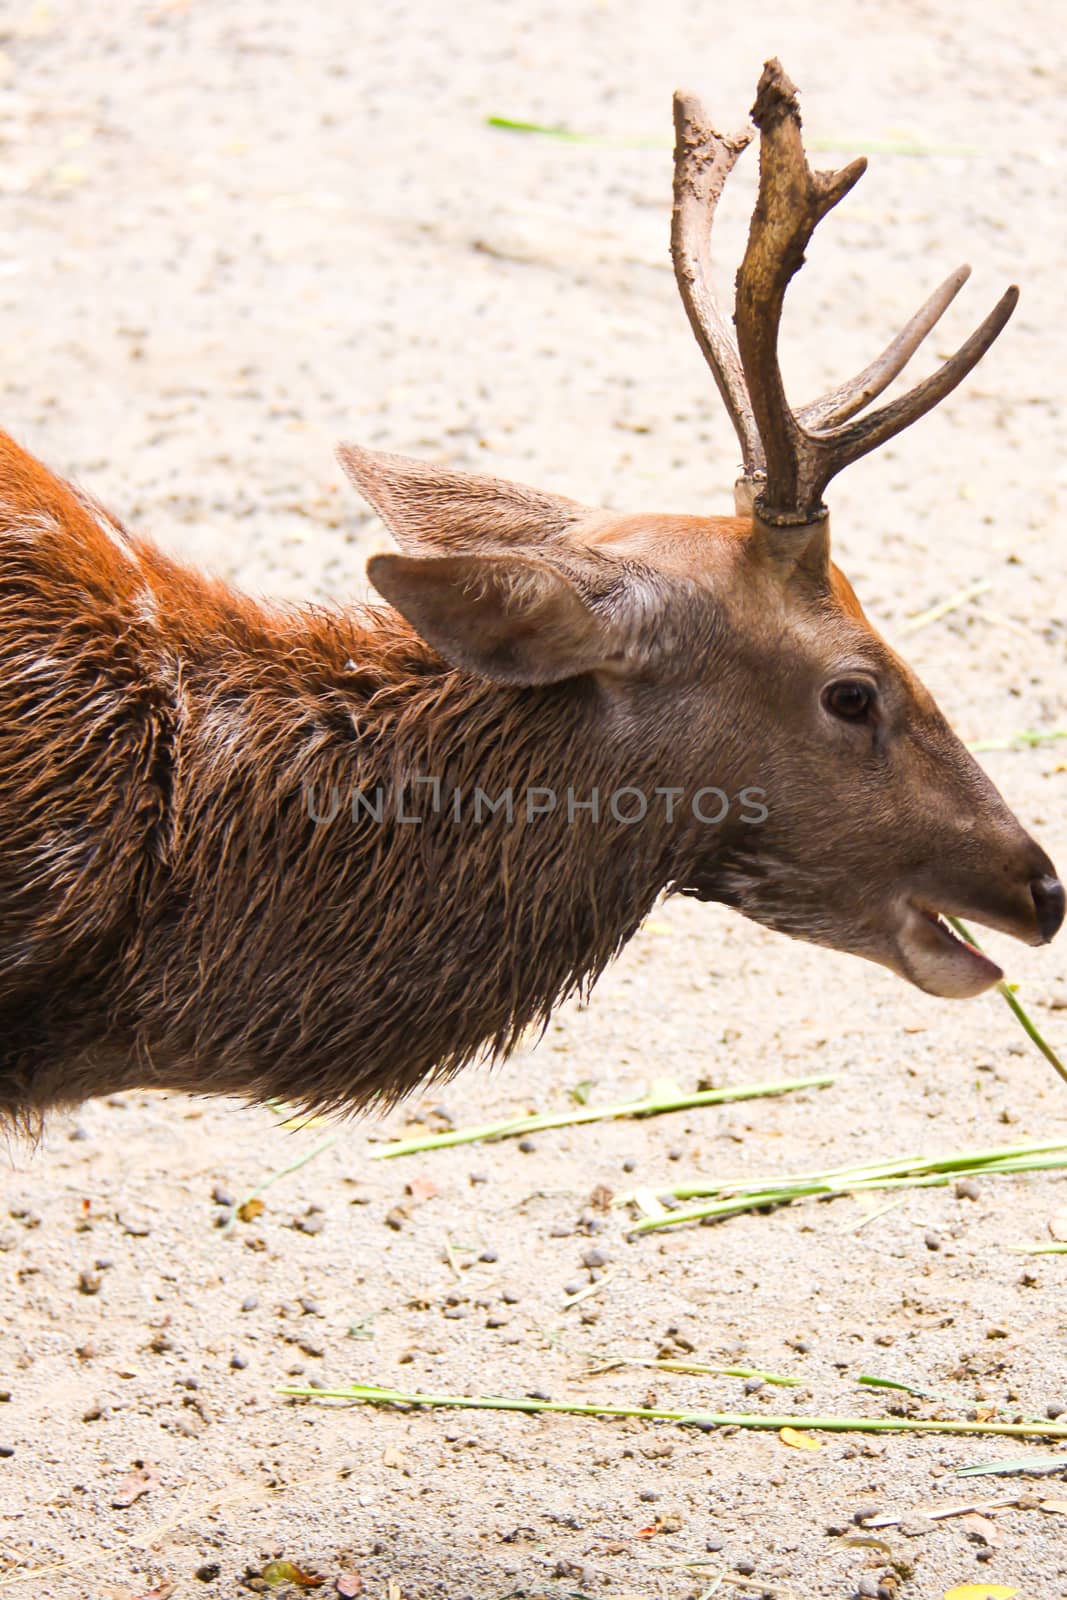 deer eats grass in outdoor zoo